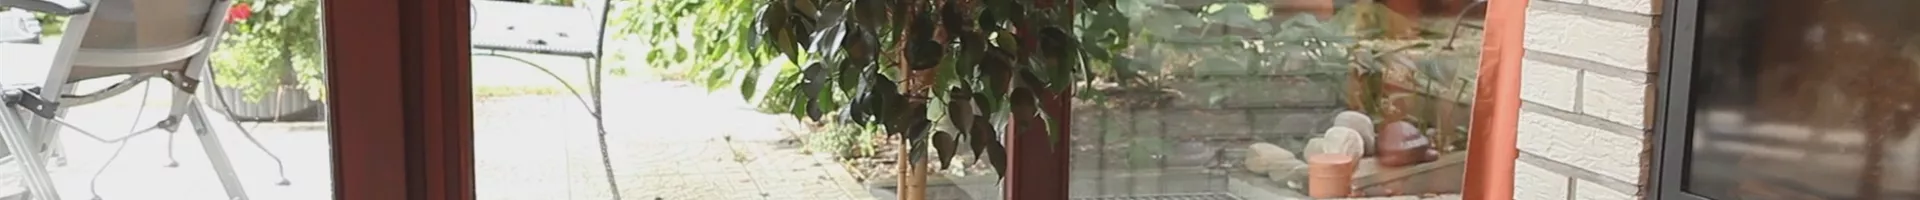 Birkenfeige - Einpflanzen in ein Gefäß (thumbnail).jpg